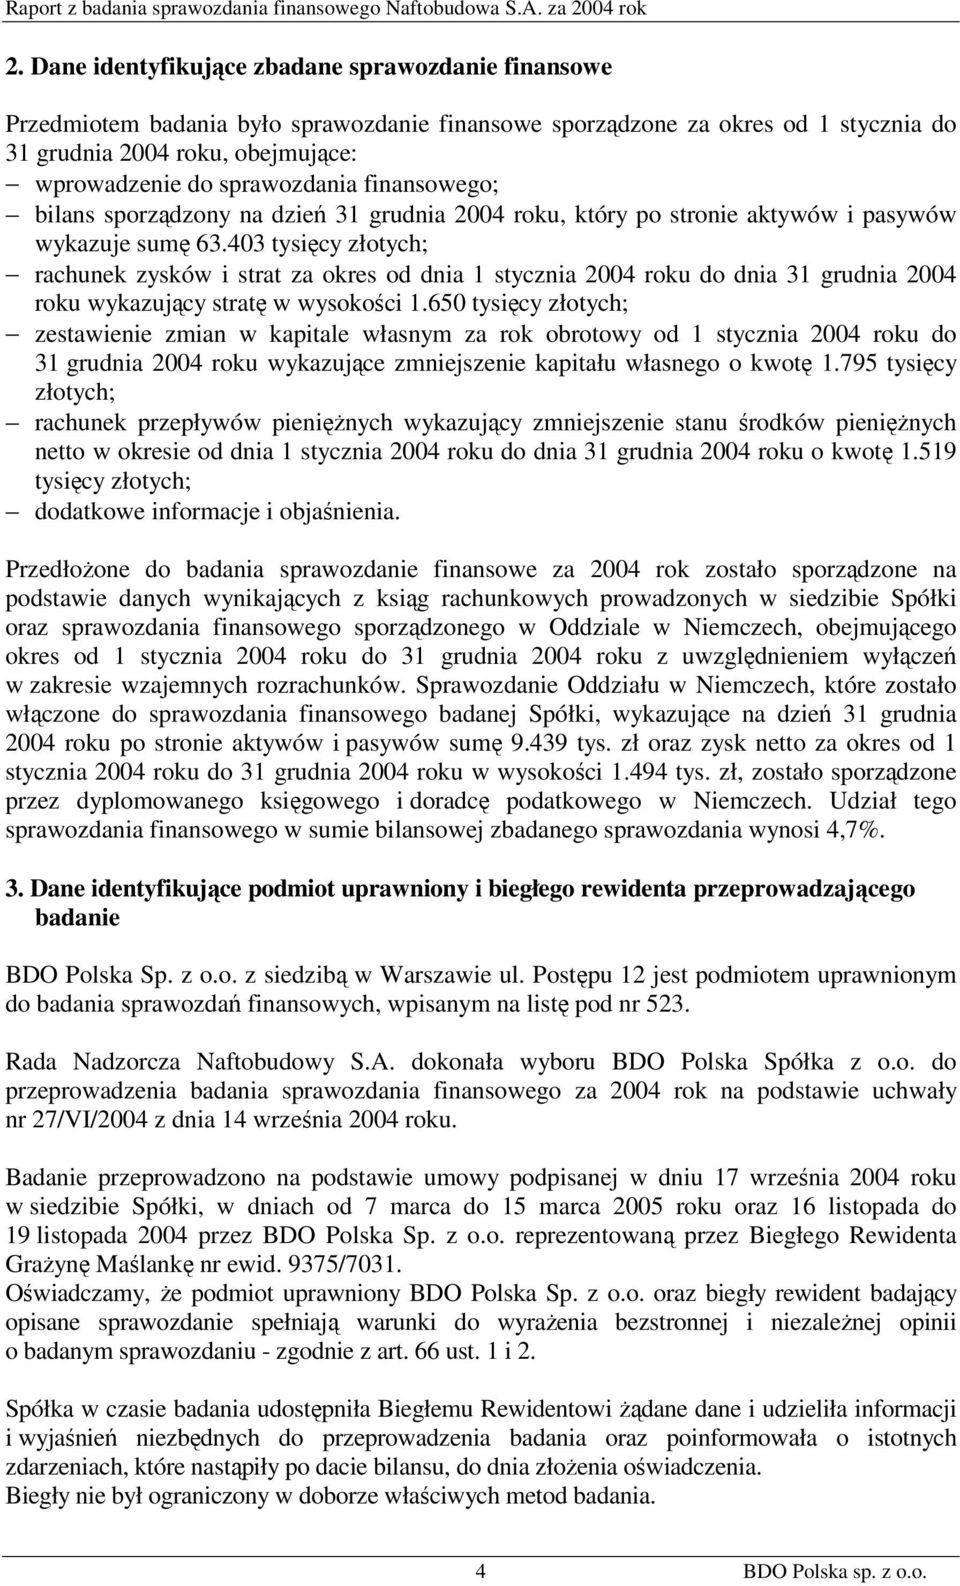 403 tysięcy złotych; rachunek zysków i strat za okres od dnia 1 stycznia 2004 roku do dnia 31 grudnia 2004 roku wykazujący stratę w wysokości 1.